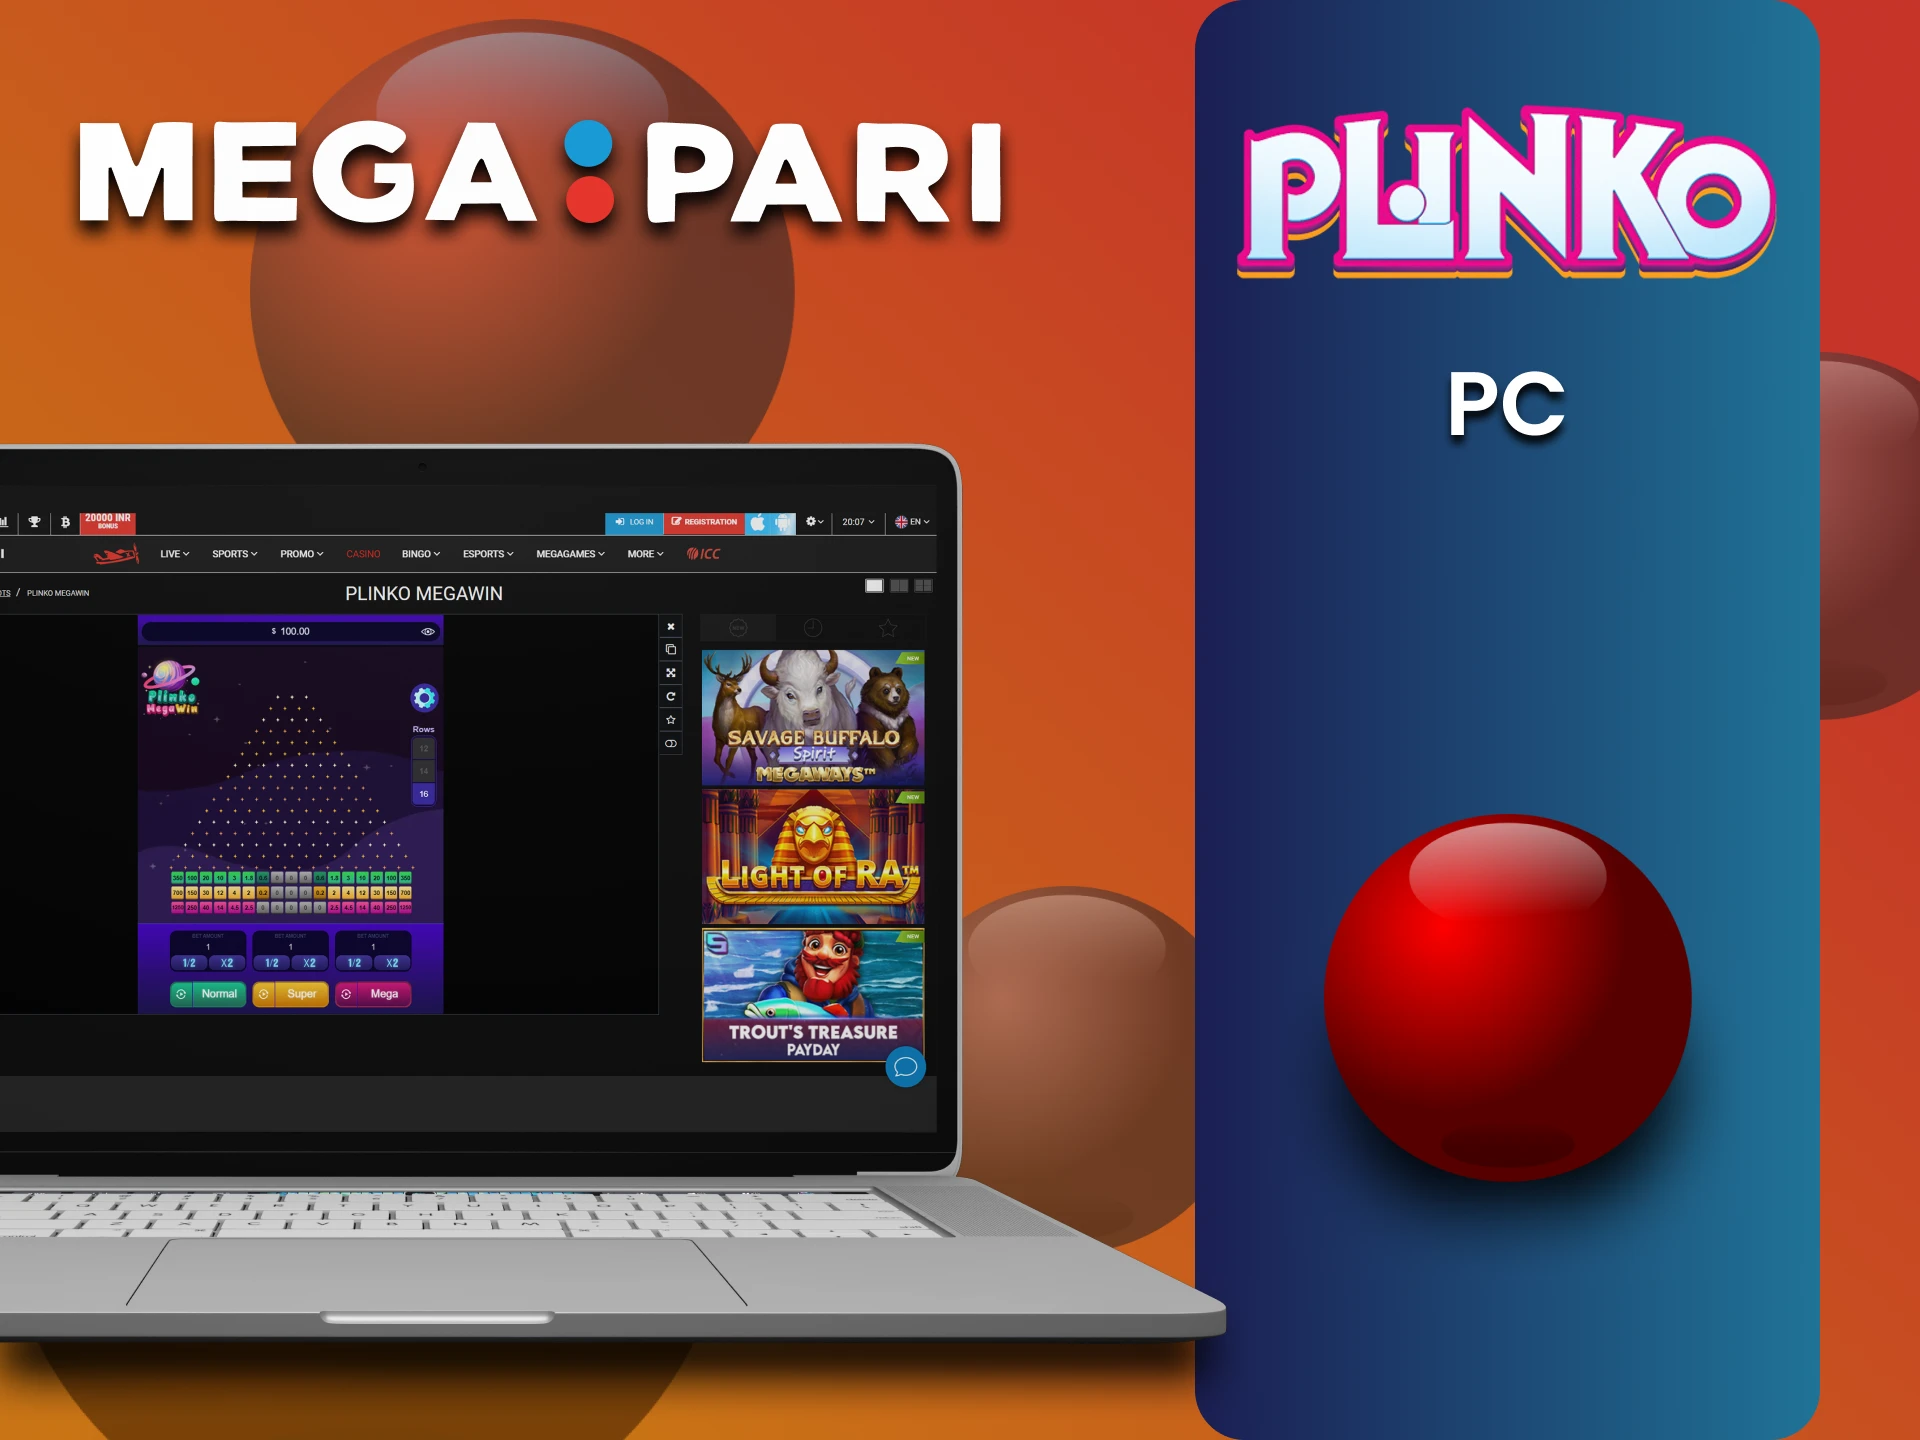 Use your PC to play Plinko on Megapari.